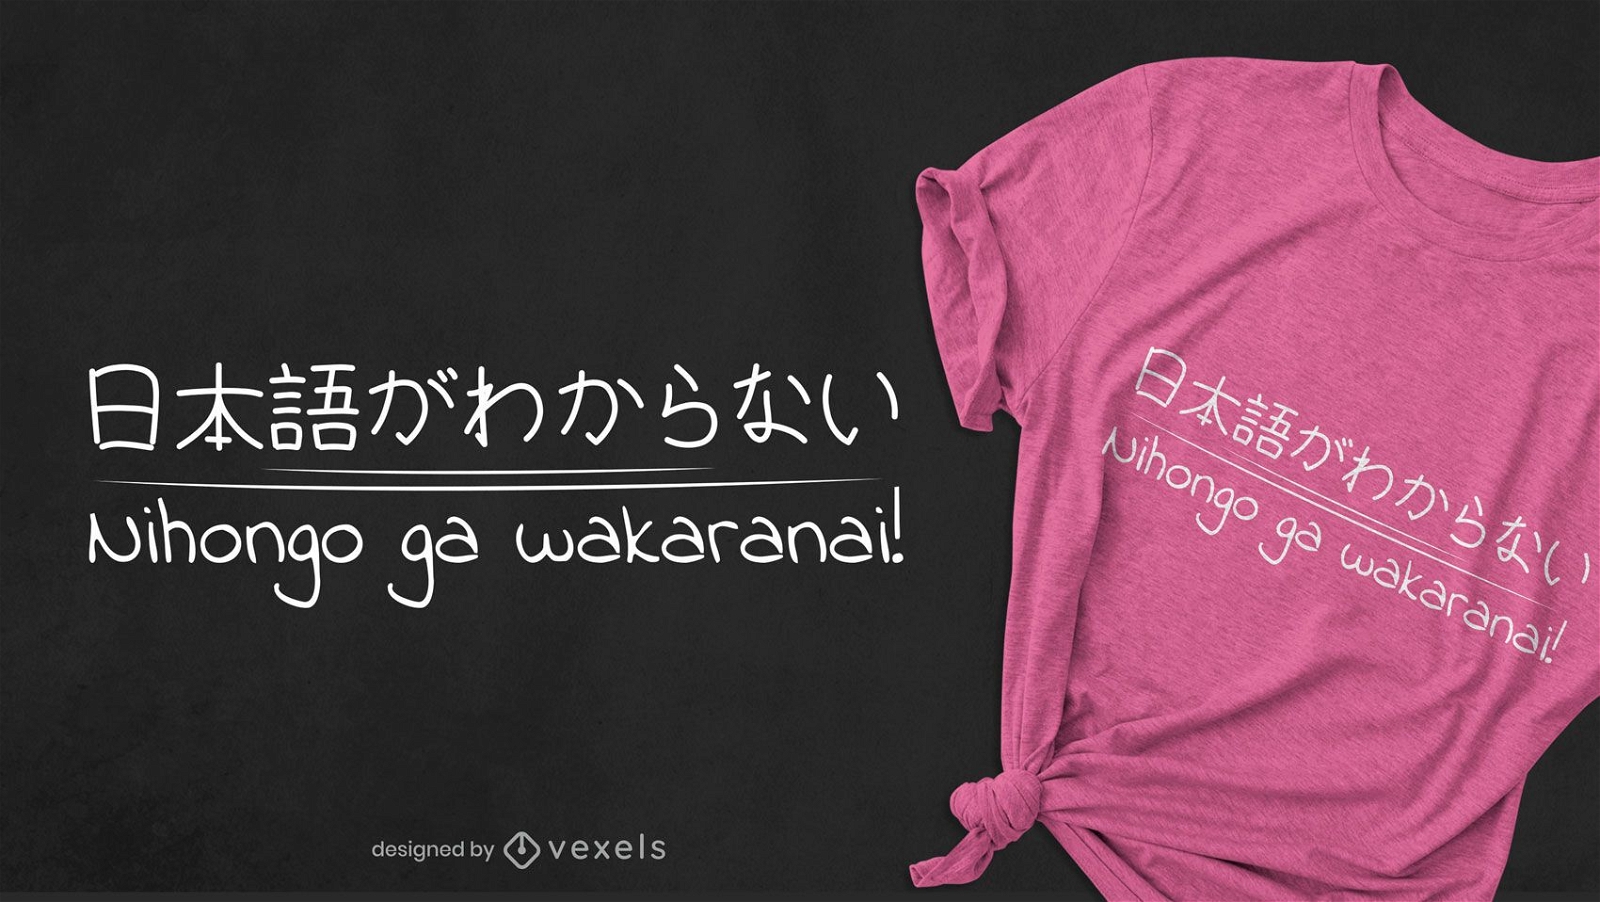 Verstehe das japanische T-Shirt Design nicht